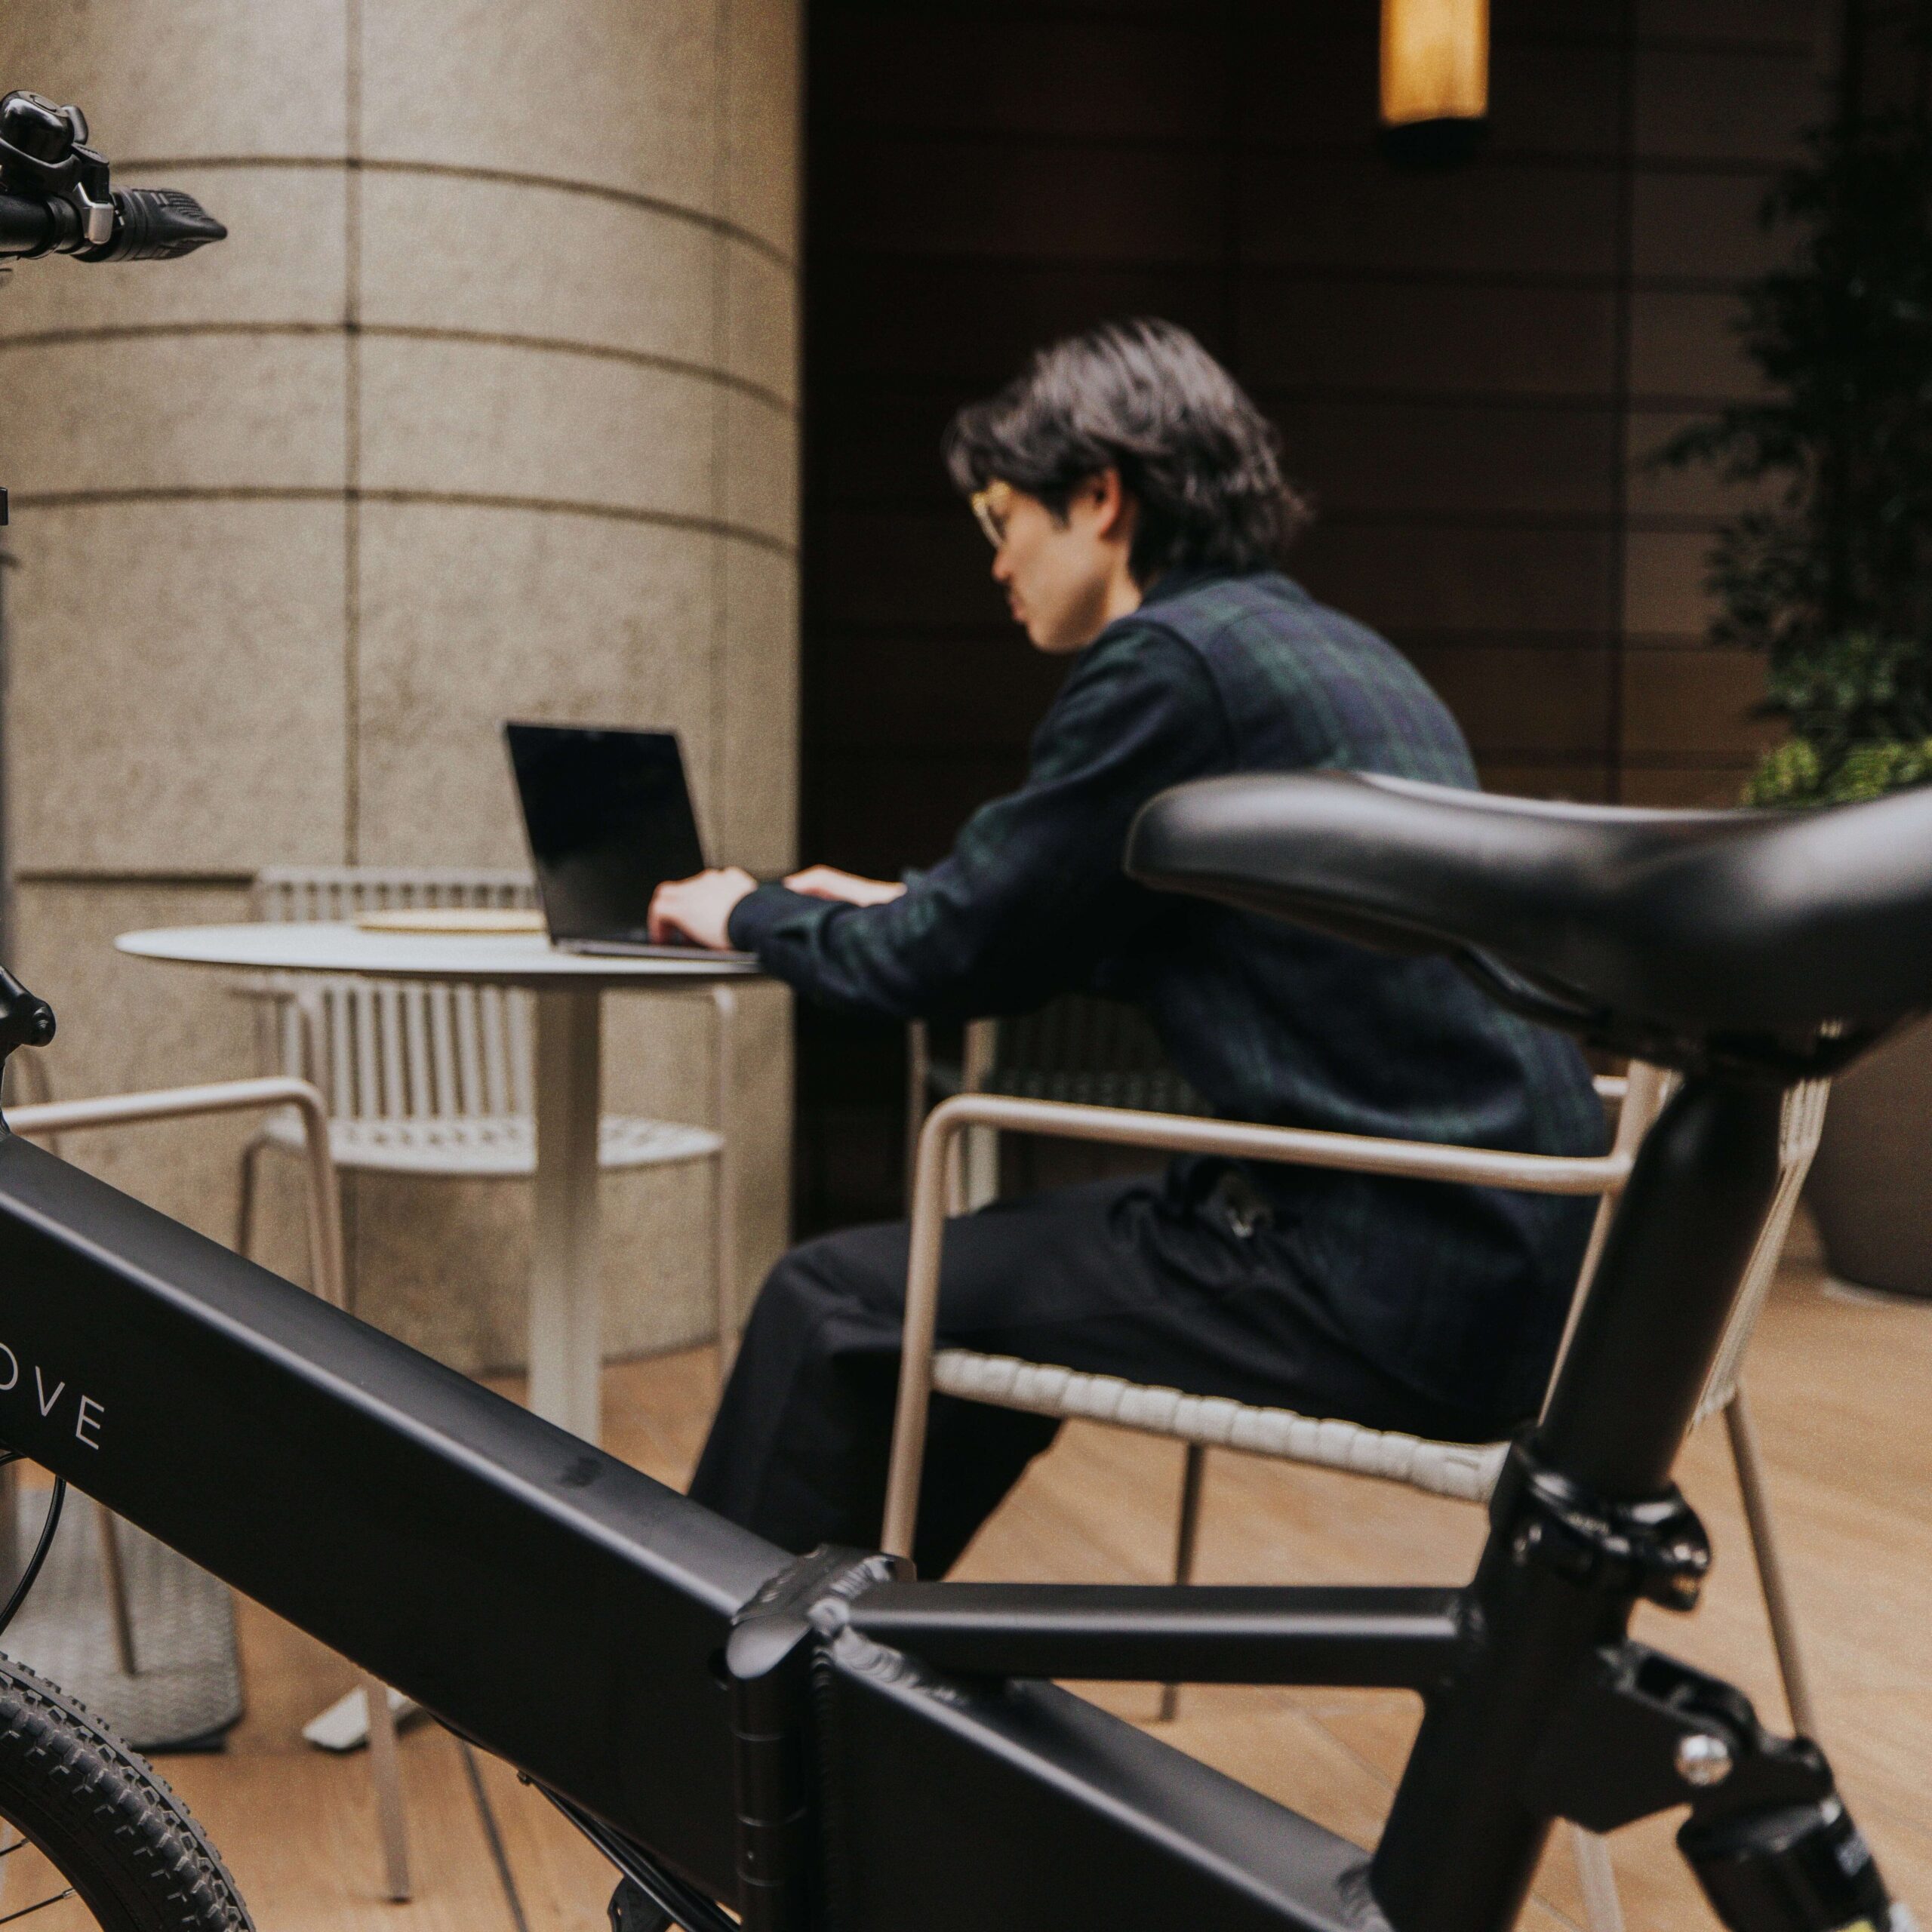 MOVE 日本発のe-bikeブランドメディアサイト